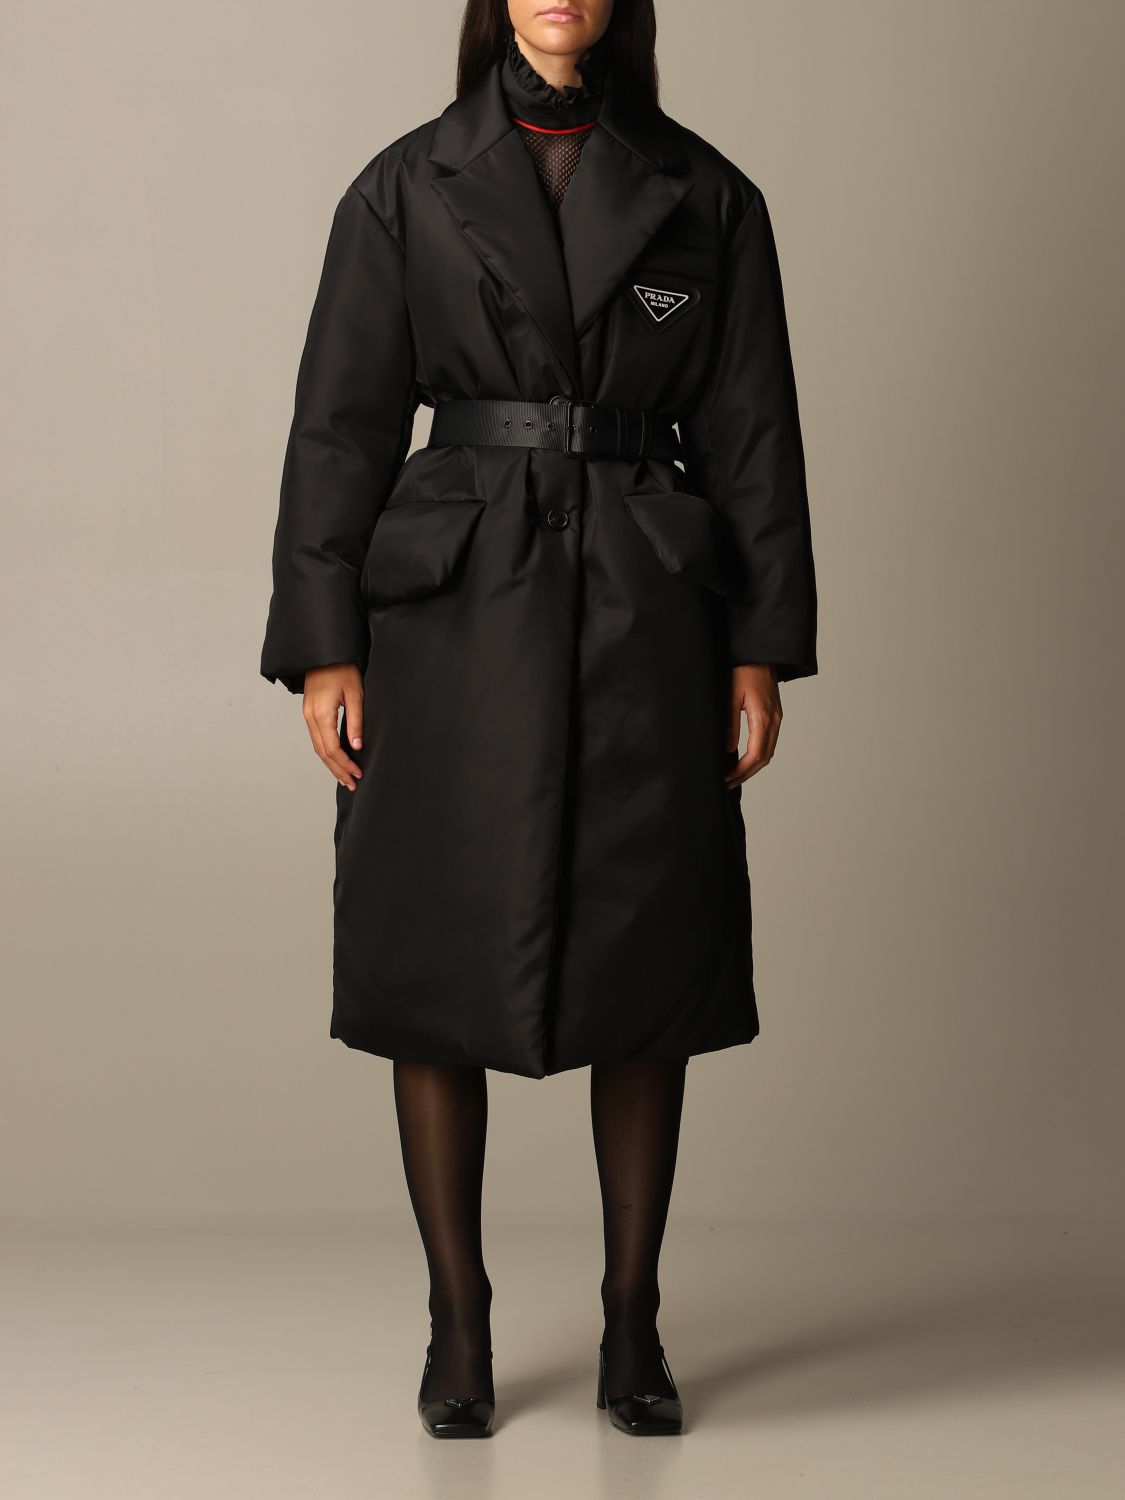 prada women's black coat